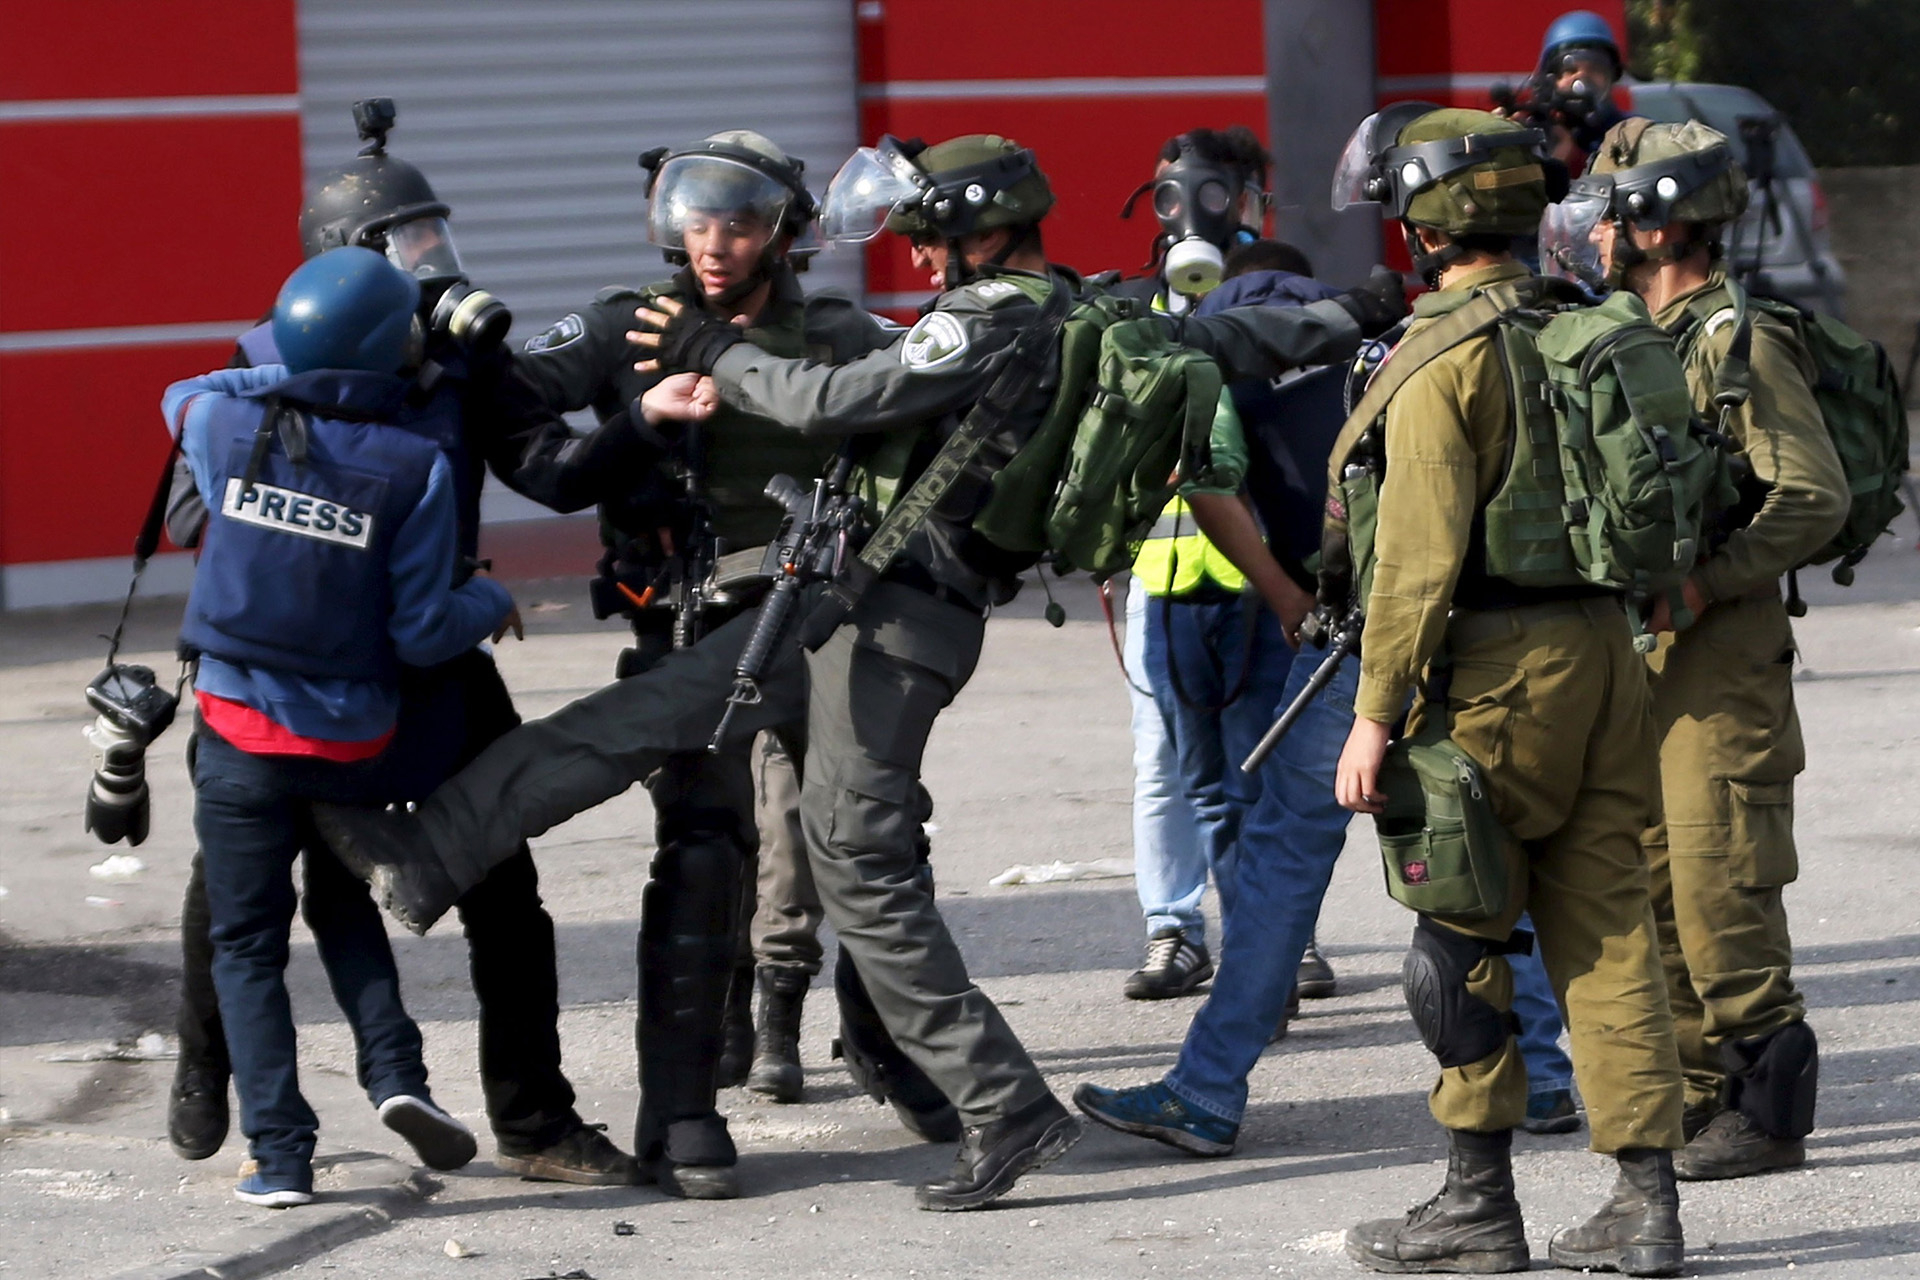 منظمة حقوقية: 4 صحفيات فلسطينيات معتقلات بينهن أم مرضعة | أخبار – البوكس نيوز